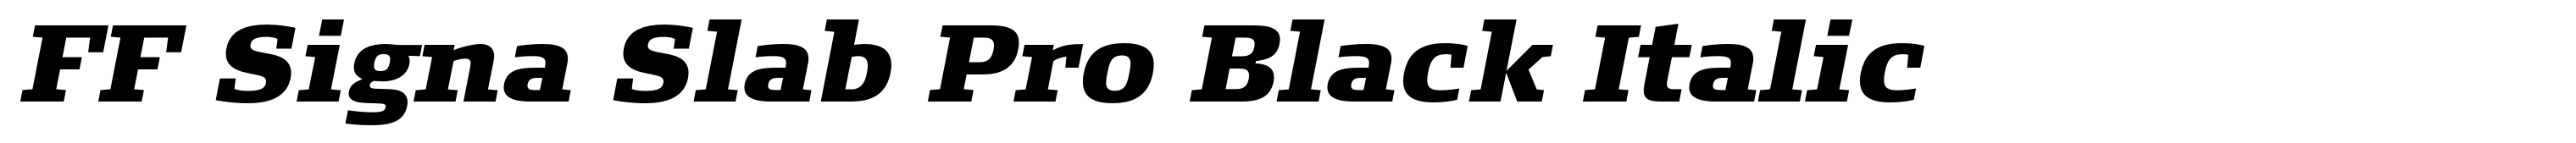 FF Signa Slab Pro Black Italic